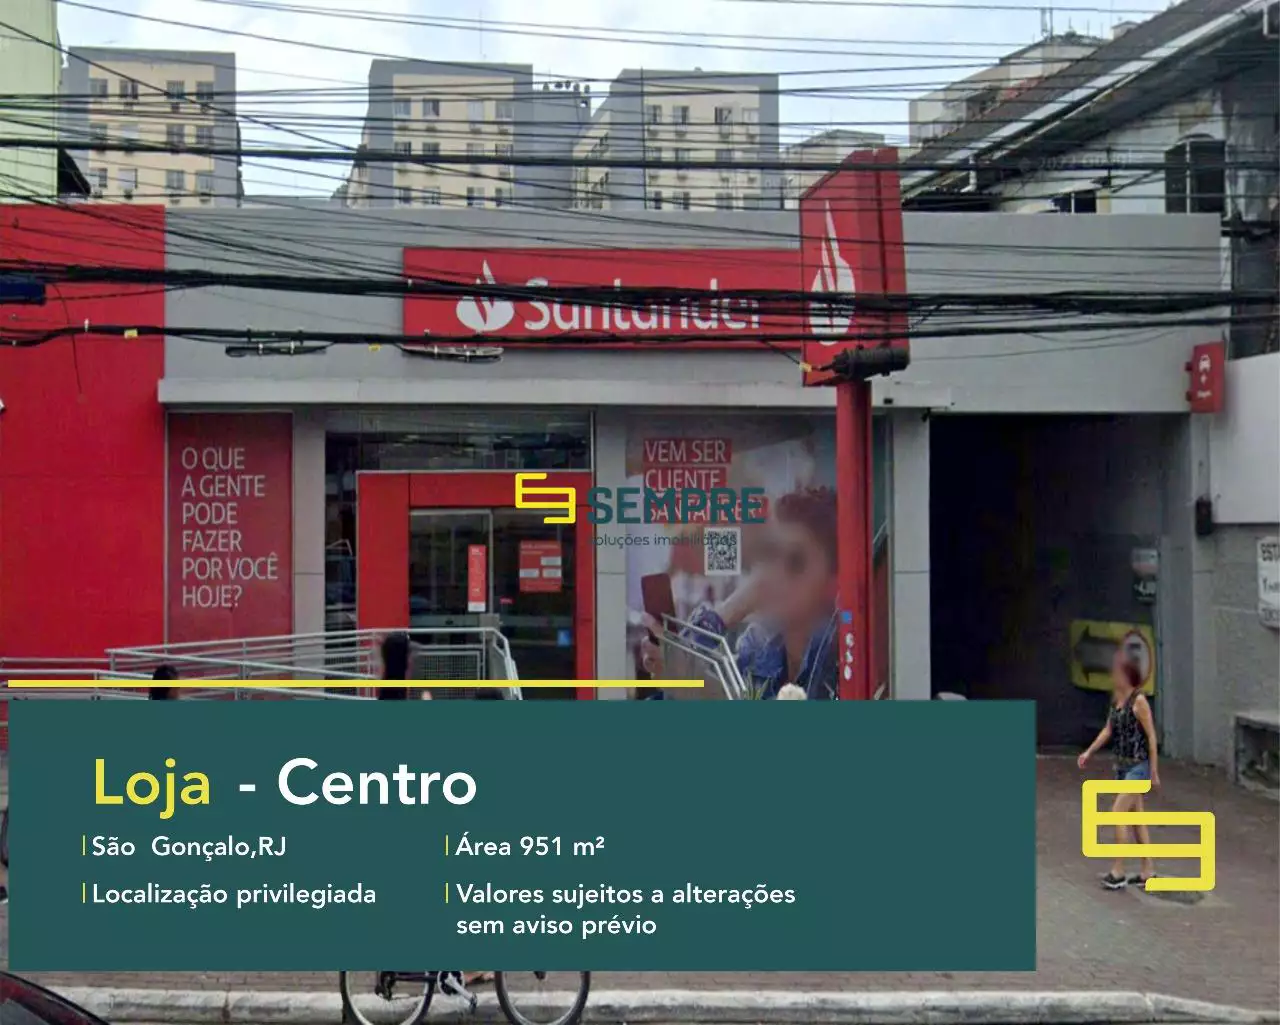 Loja no Centro em São Gonçalo para alugar no Rio de Janeiro, em excelente localização. O estabelecimento comercial conta com área de 951 m².